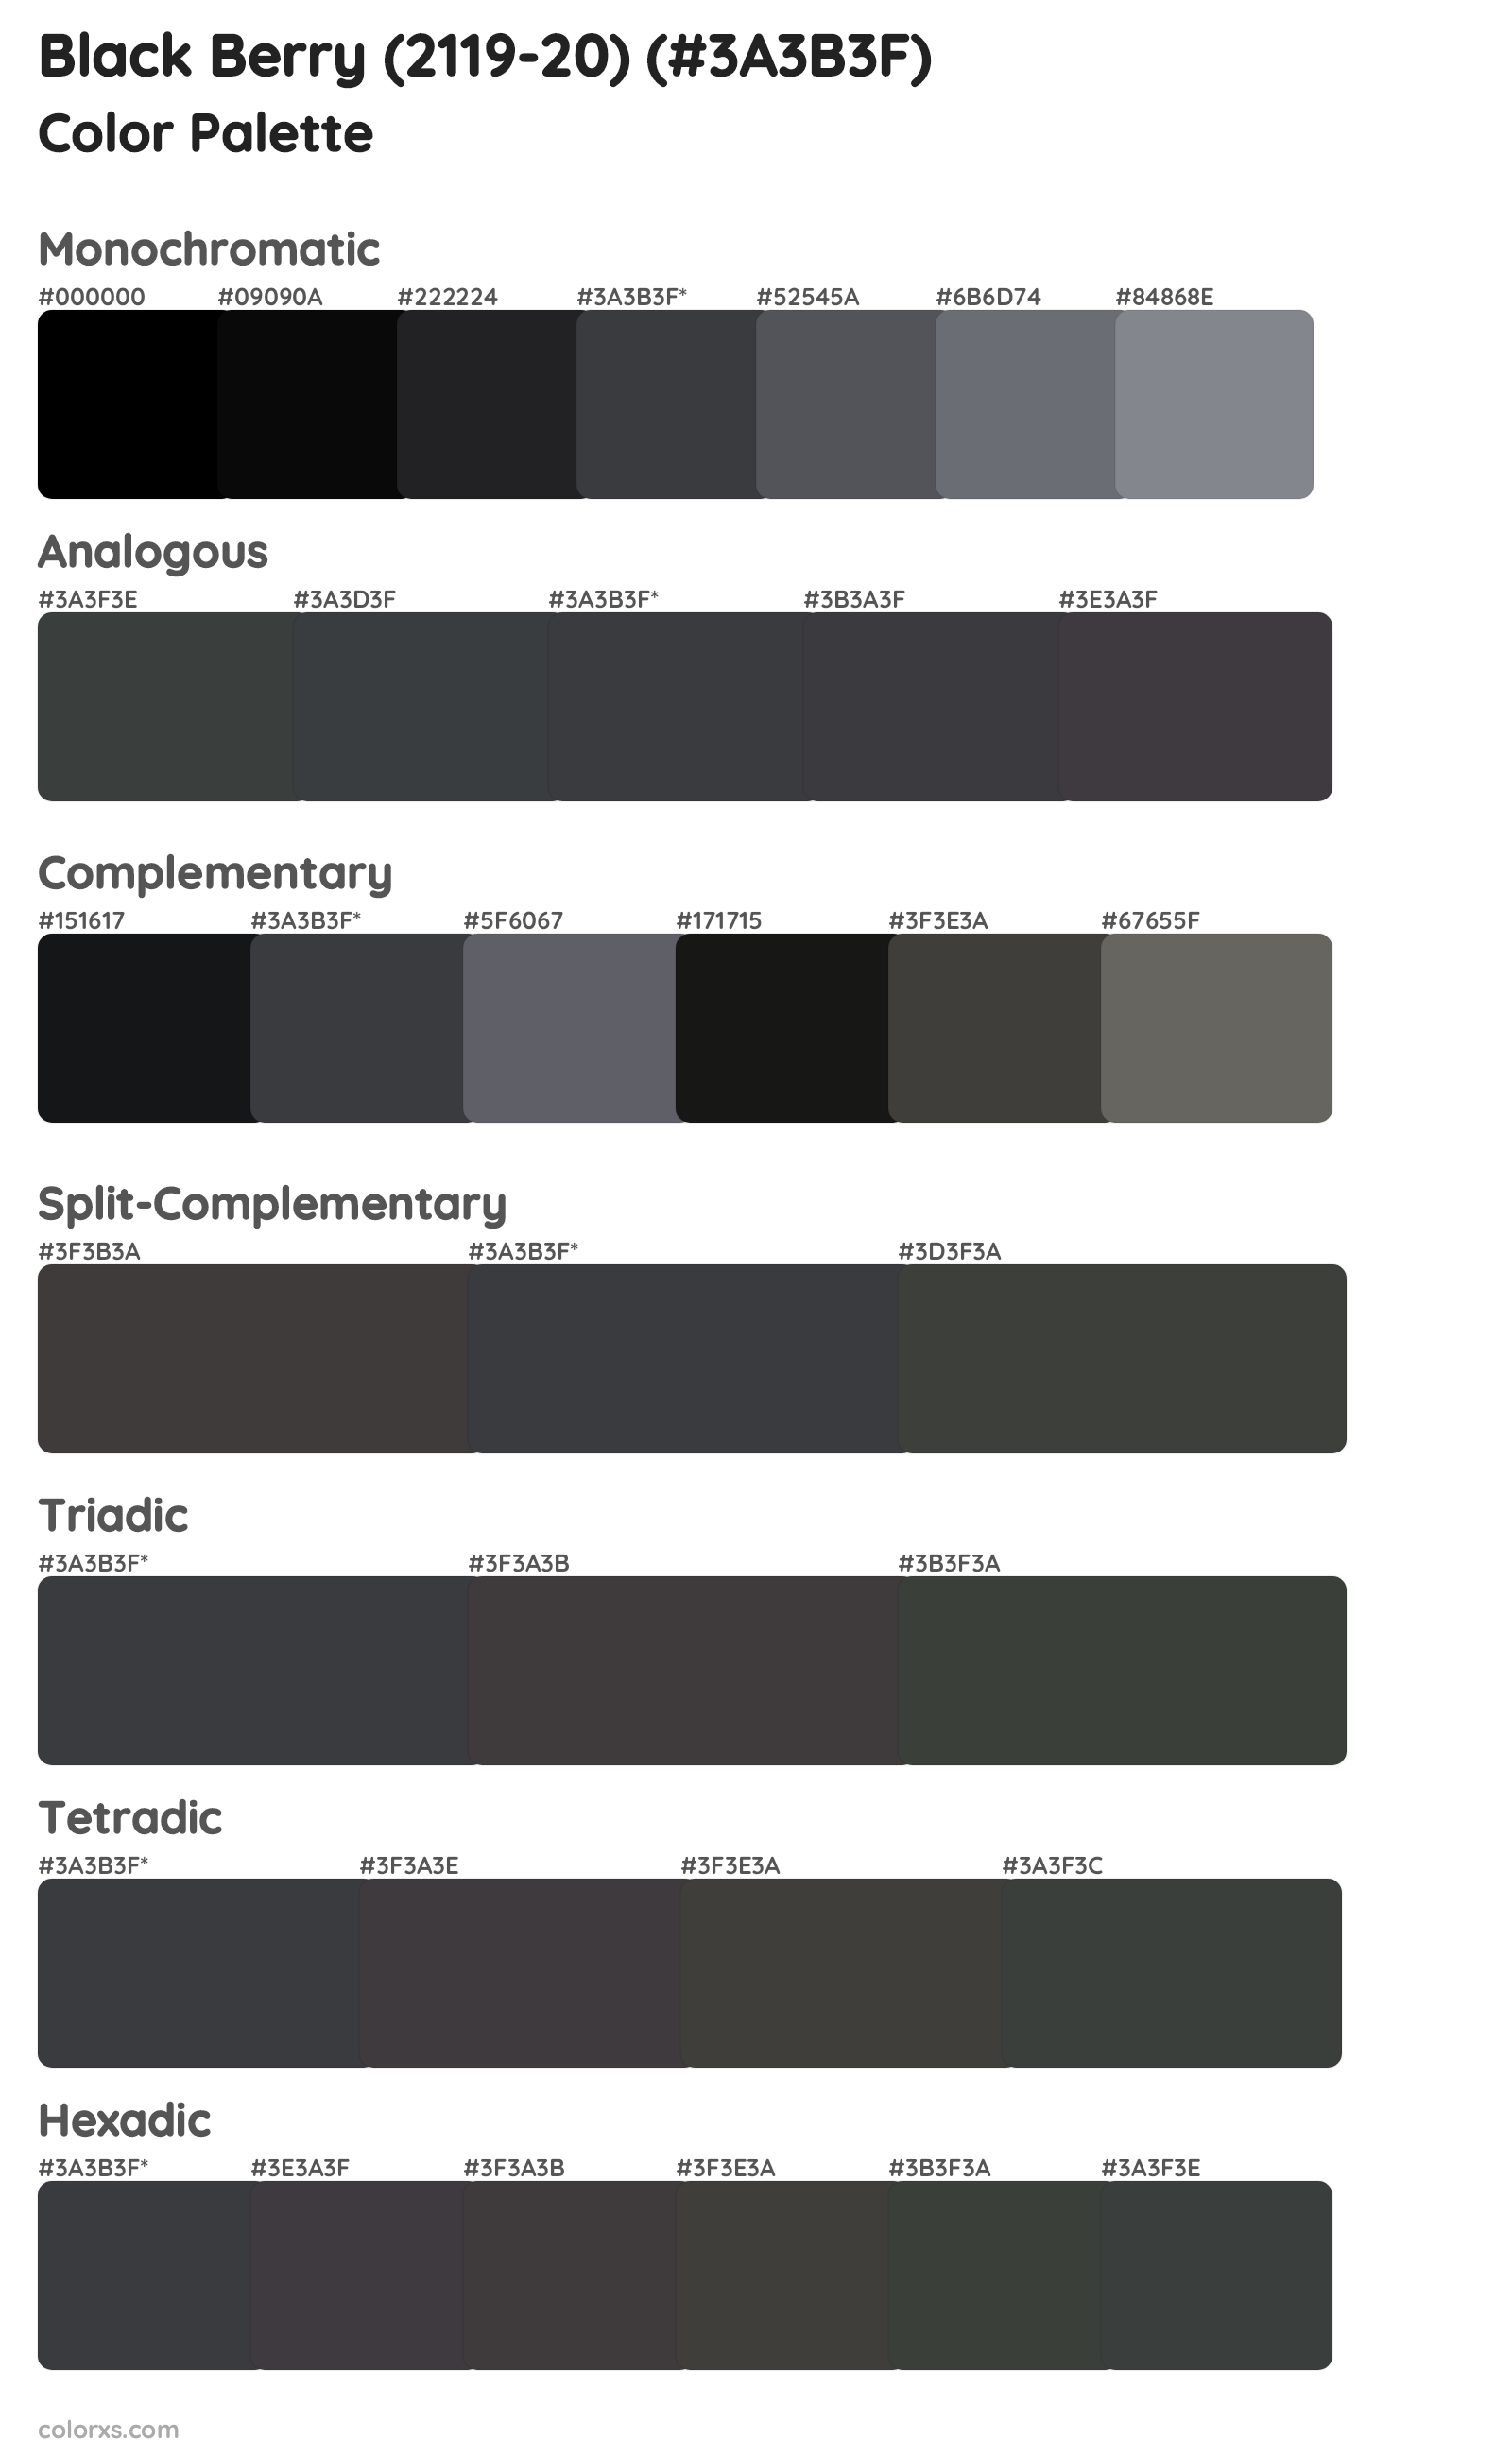 Black Berry (2119-20) Color Scheme Palettes